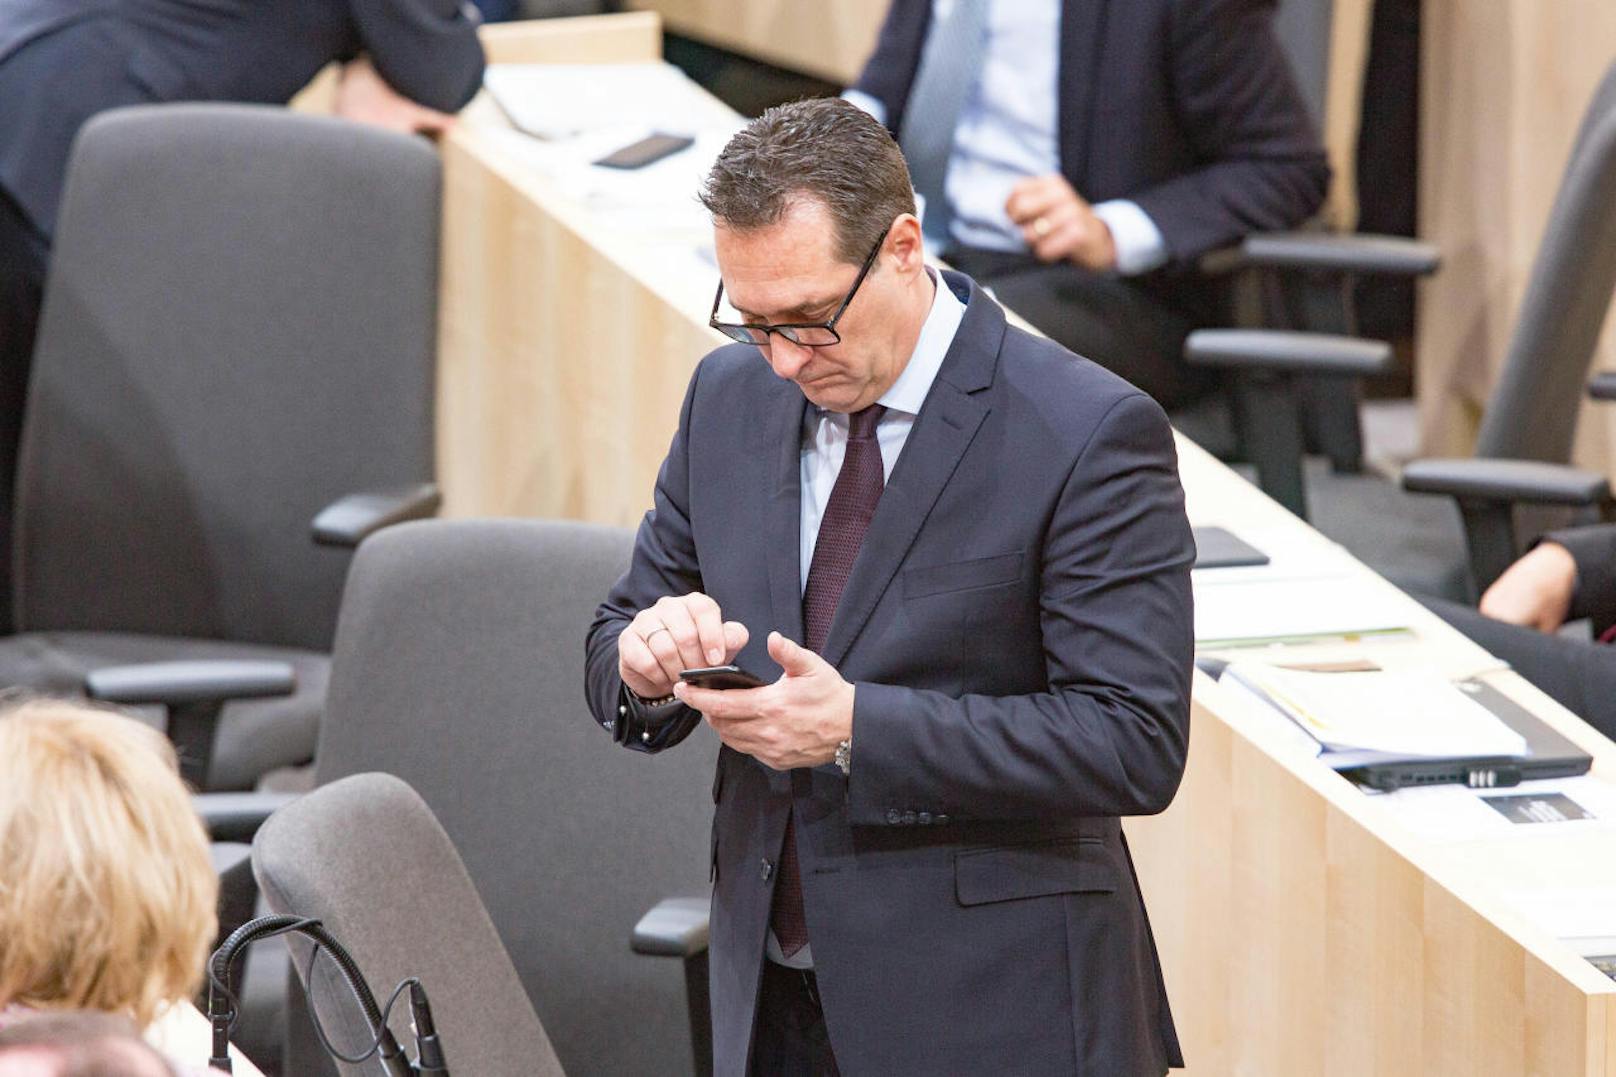 HC Strache hat über seinen Anwalt eine erste Stellungnahme zur Razzia abgegeben. Er ortet einen weiteren Versuch, ihn "mundtot" zu machen. Auch sein Handy wurde mitgenommen.